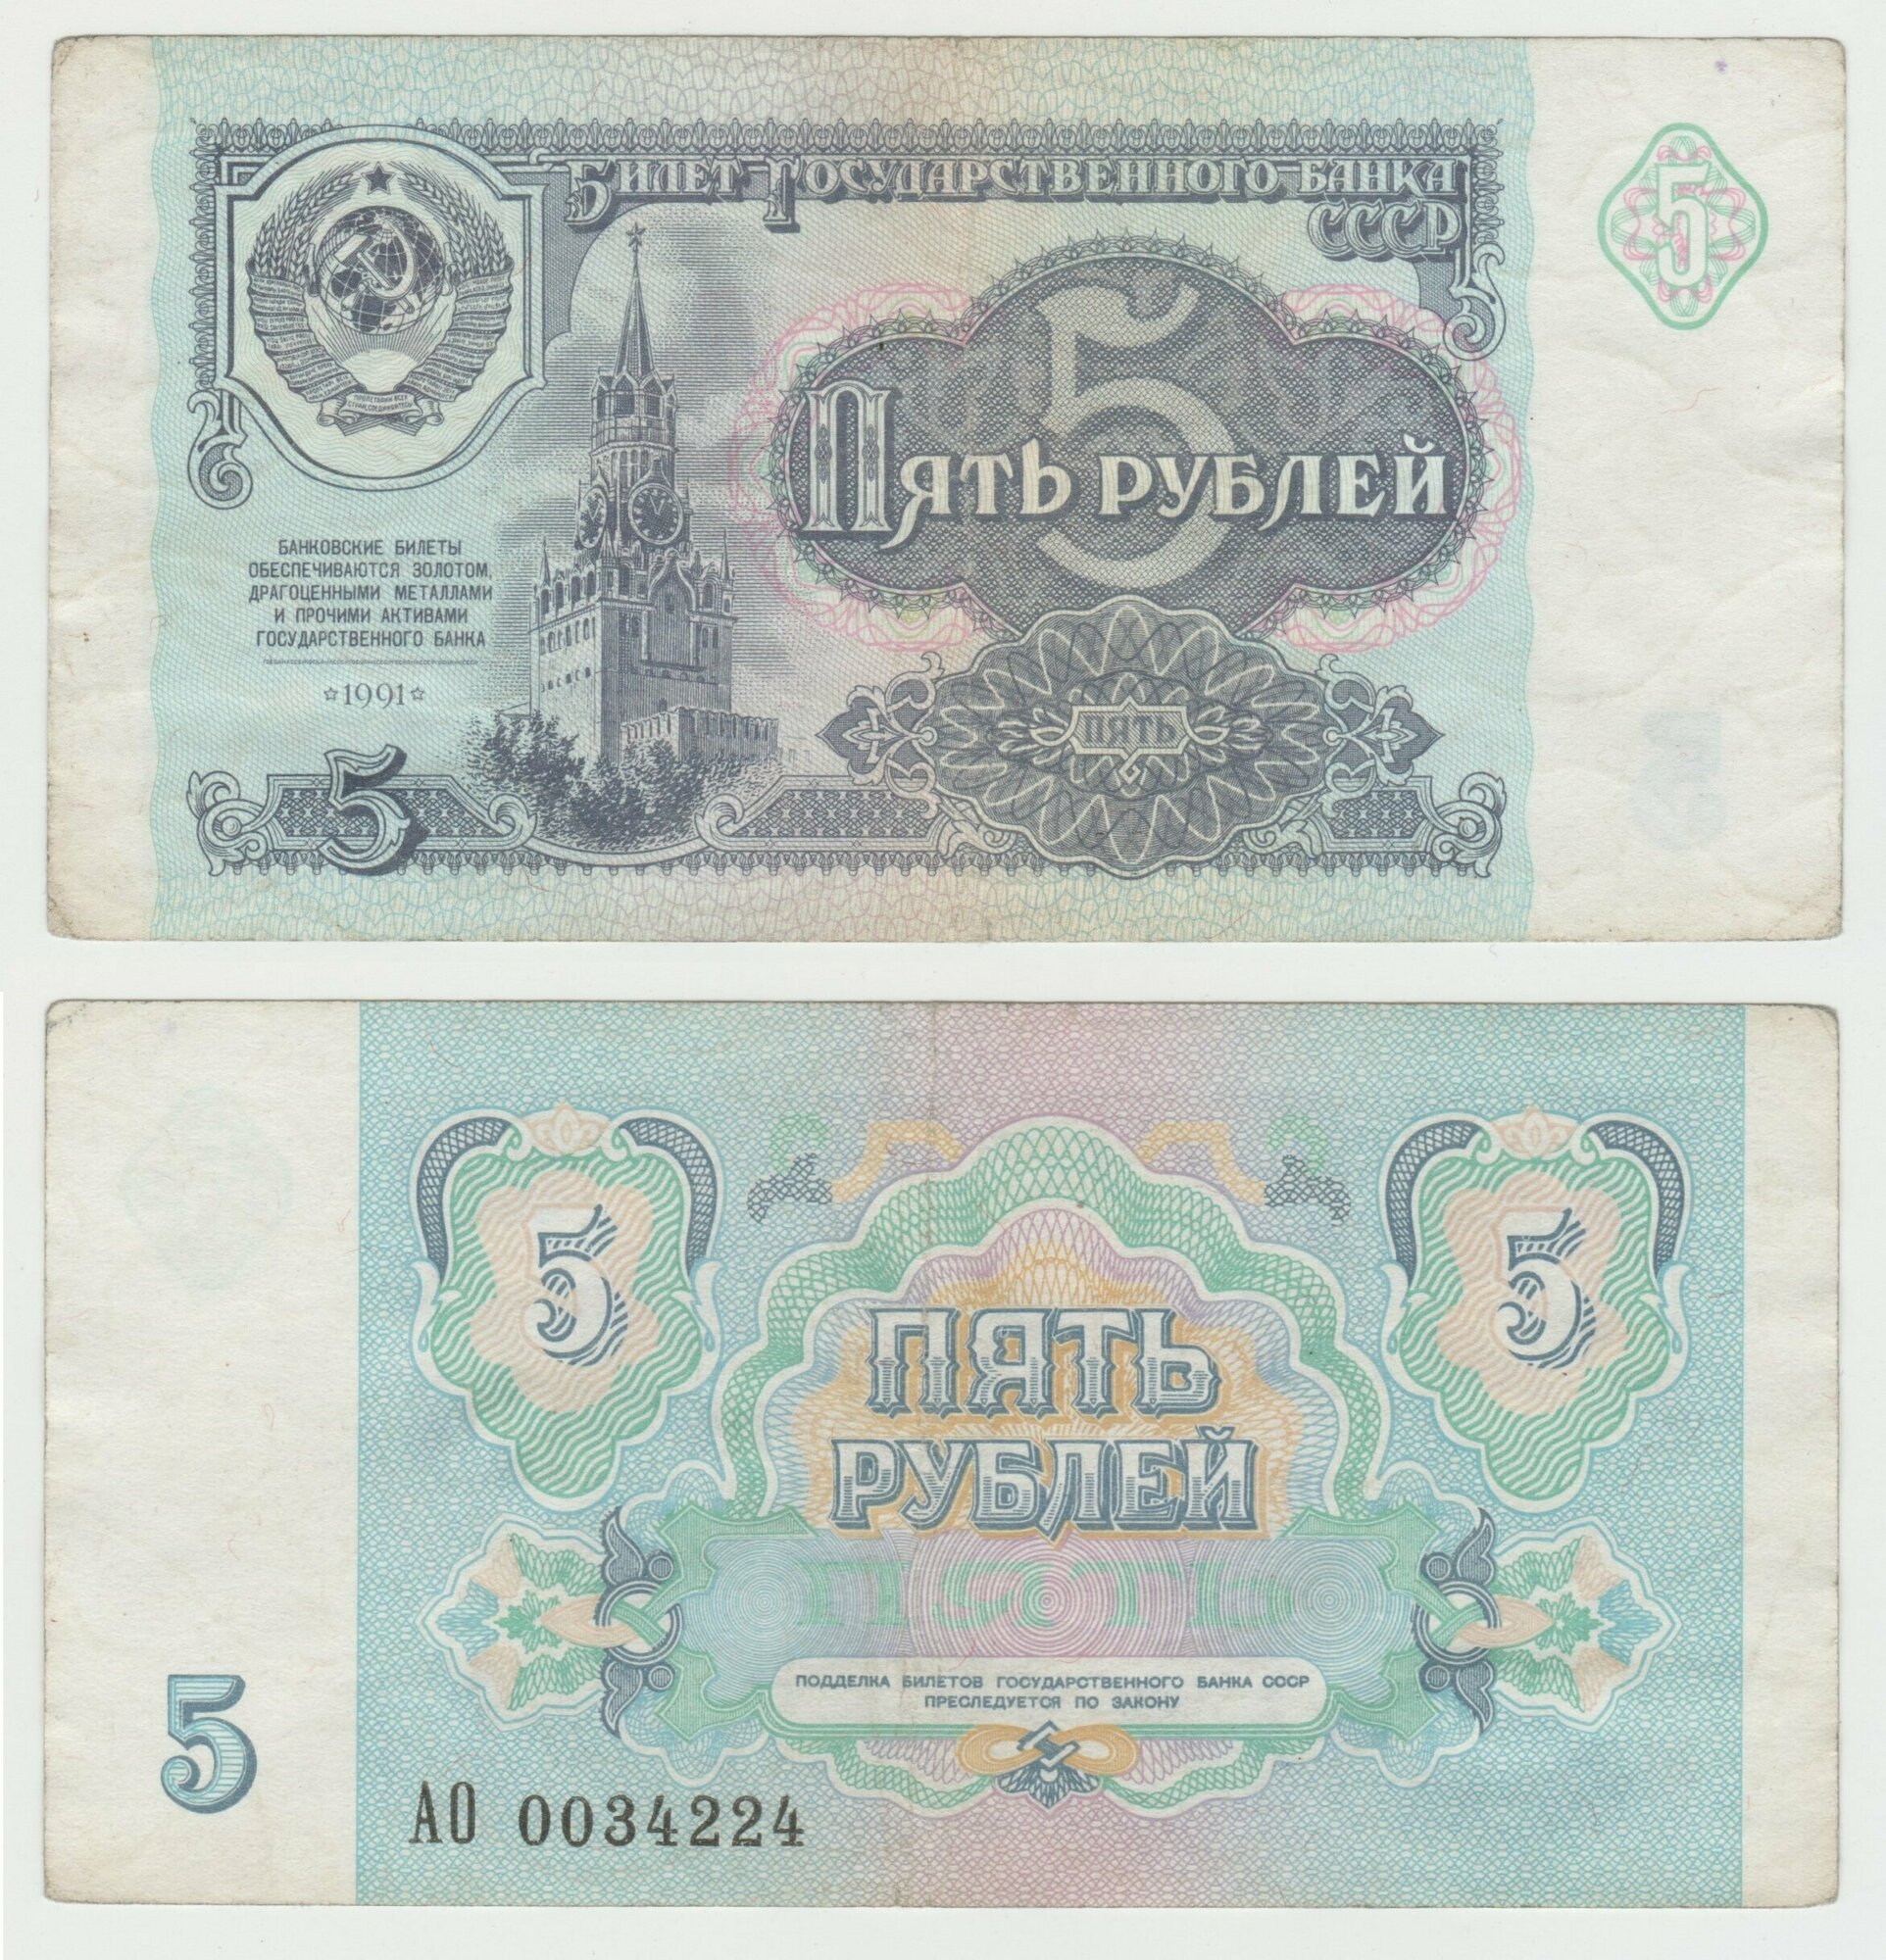 Банкнота СССР 5 рублей 1991 года